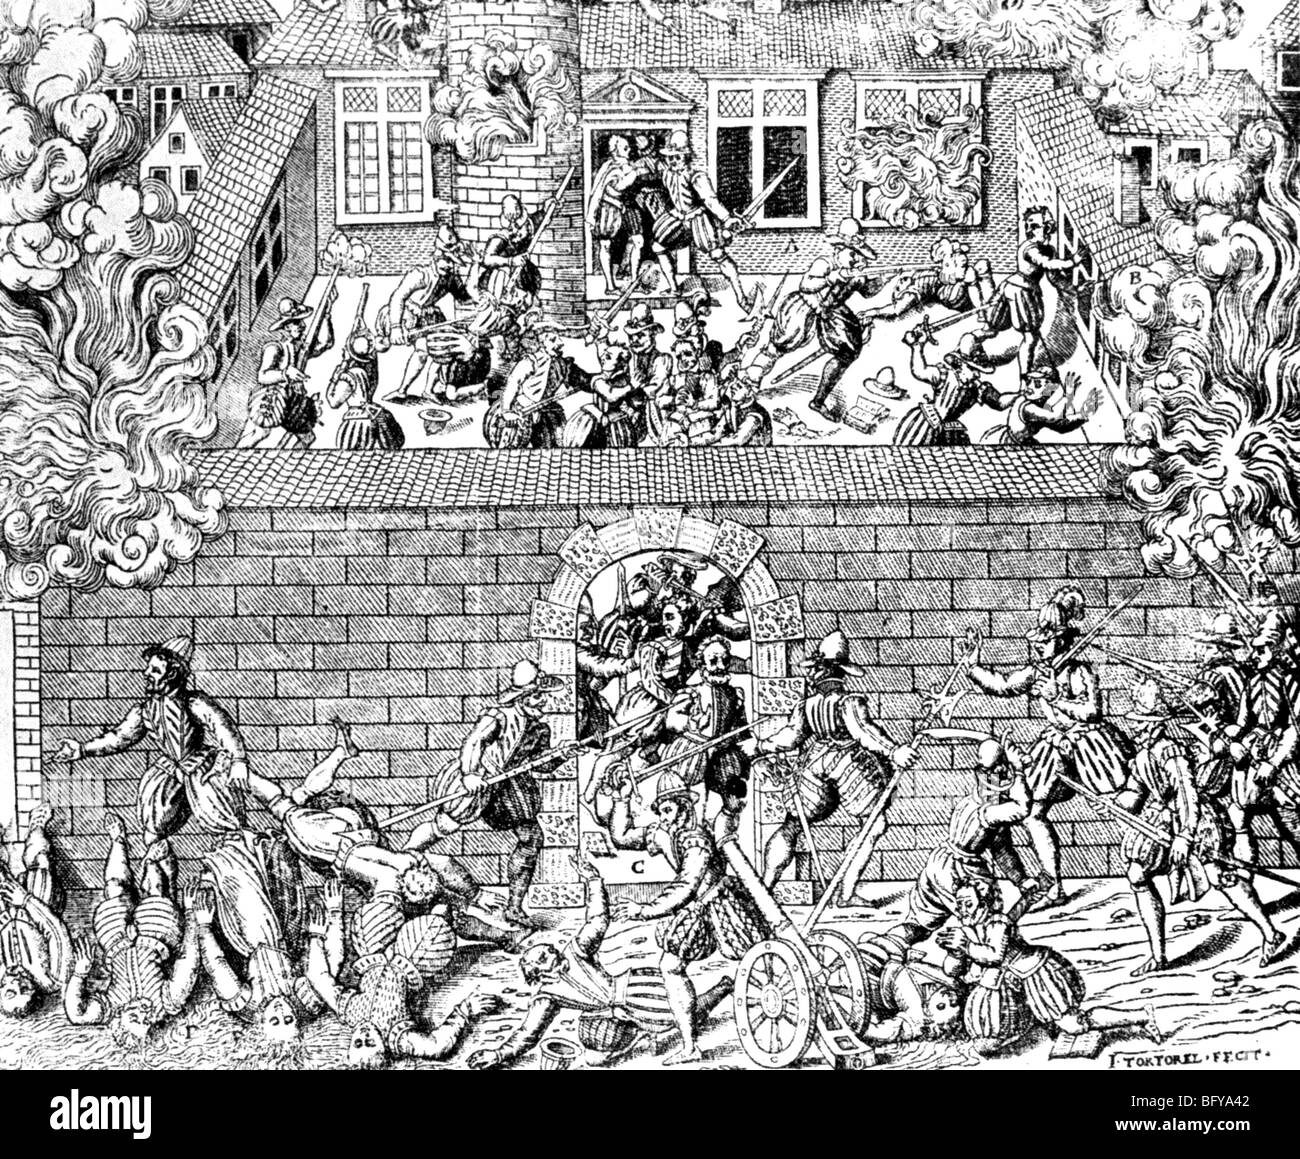 Masacre de los hugonotes en Cahors, Francia, en 1561 Foto de stock